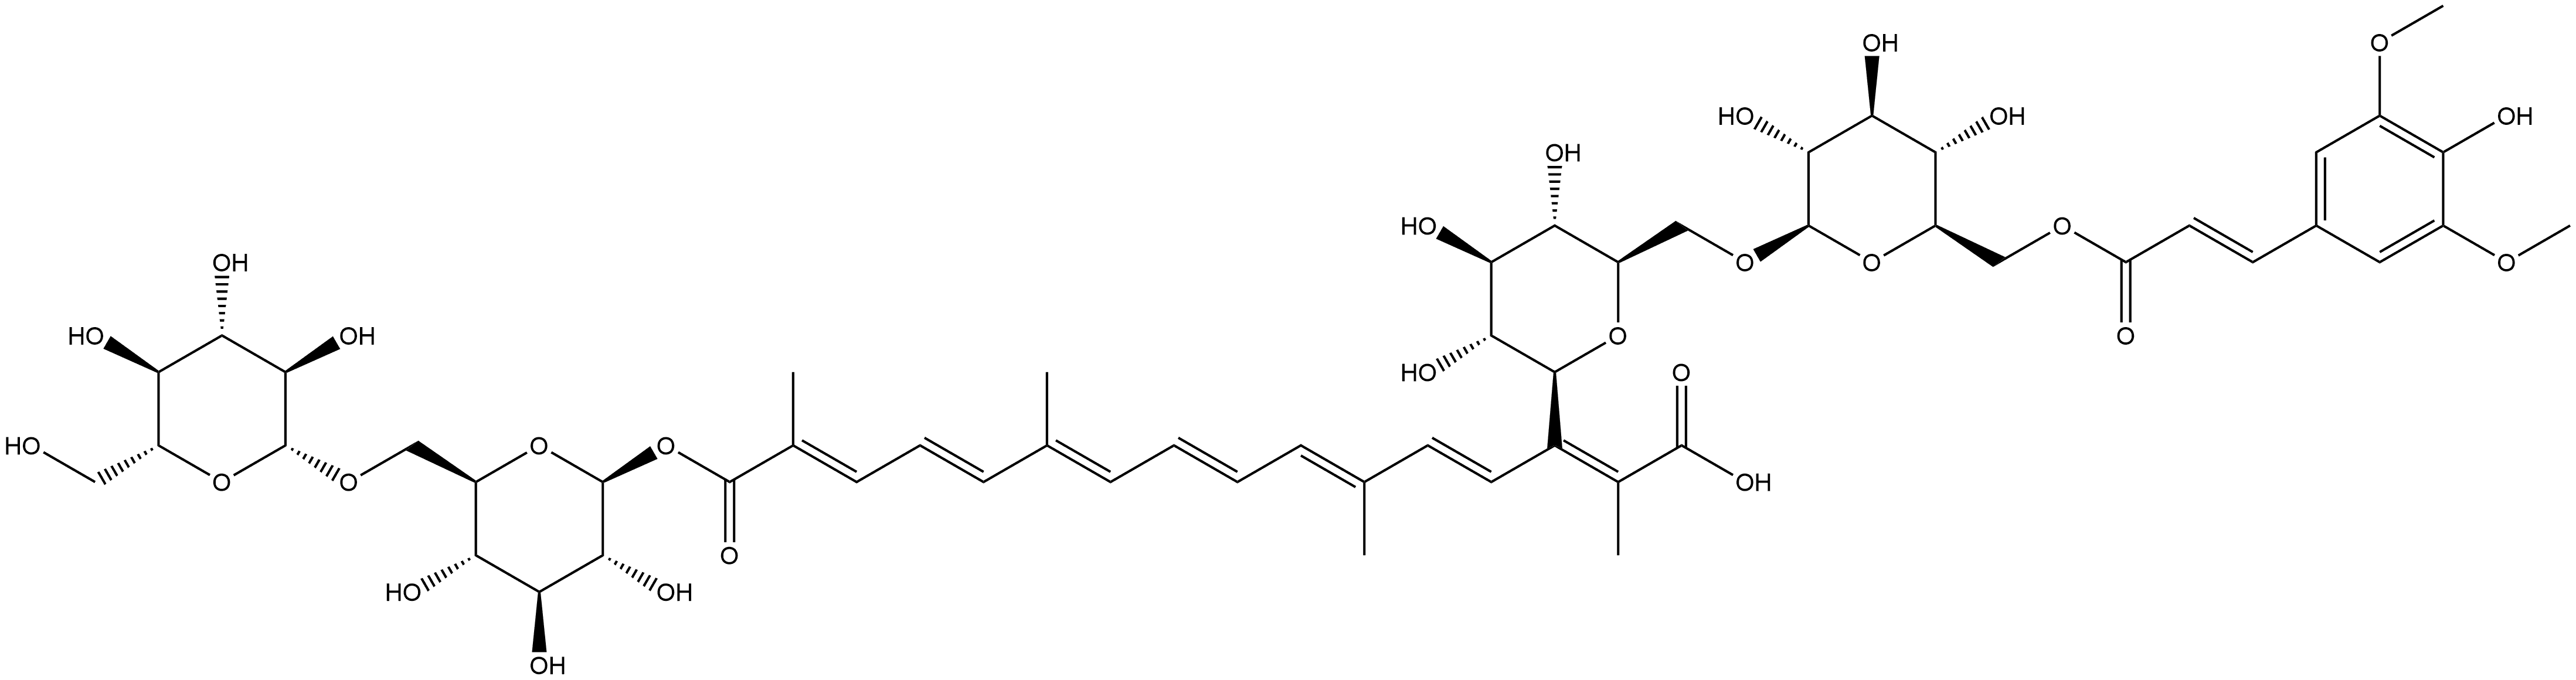 β-D-Glucopyranose, 6-O-β-D-glucopyranosyl-, 1-[14-[6-O-[6-O-[(2E)-3-(4-hydroxy-3,5-dimethoxyphenyl)-1-oxo-2-propen-1-yl]-β-D-glucopyranosyl]-β-D-glucopyranosyl] (2E,4E,6E,8E,10E,12E,14E)-2,6,11,15-tetramethyl-2,4,6,8,10,12,14-hexadecaheptaenedioate] 구조식 이미지